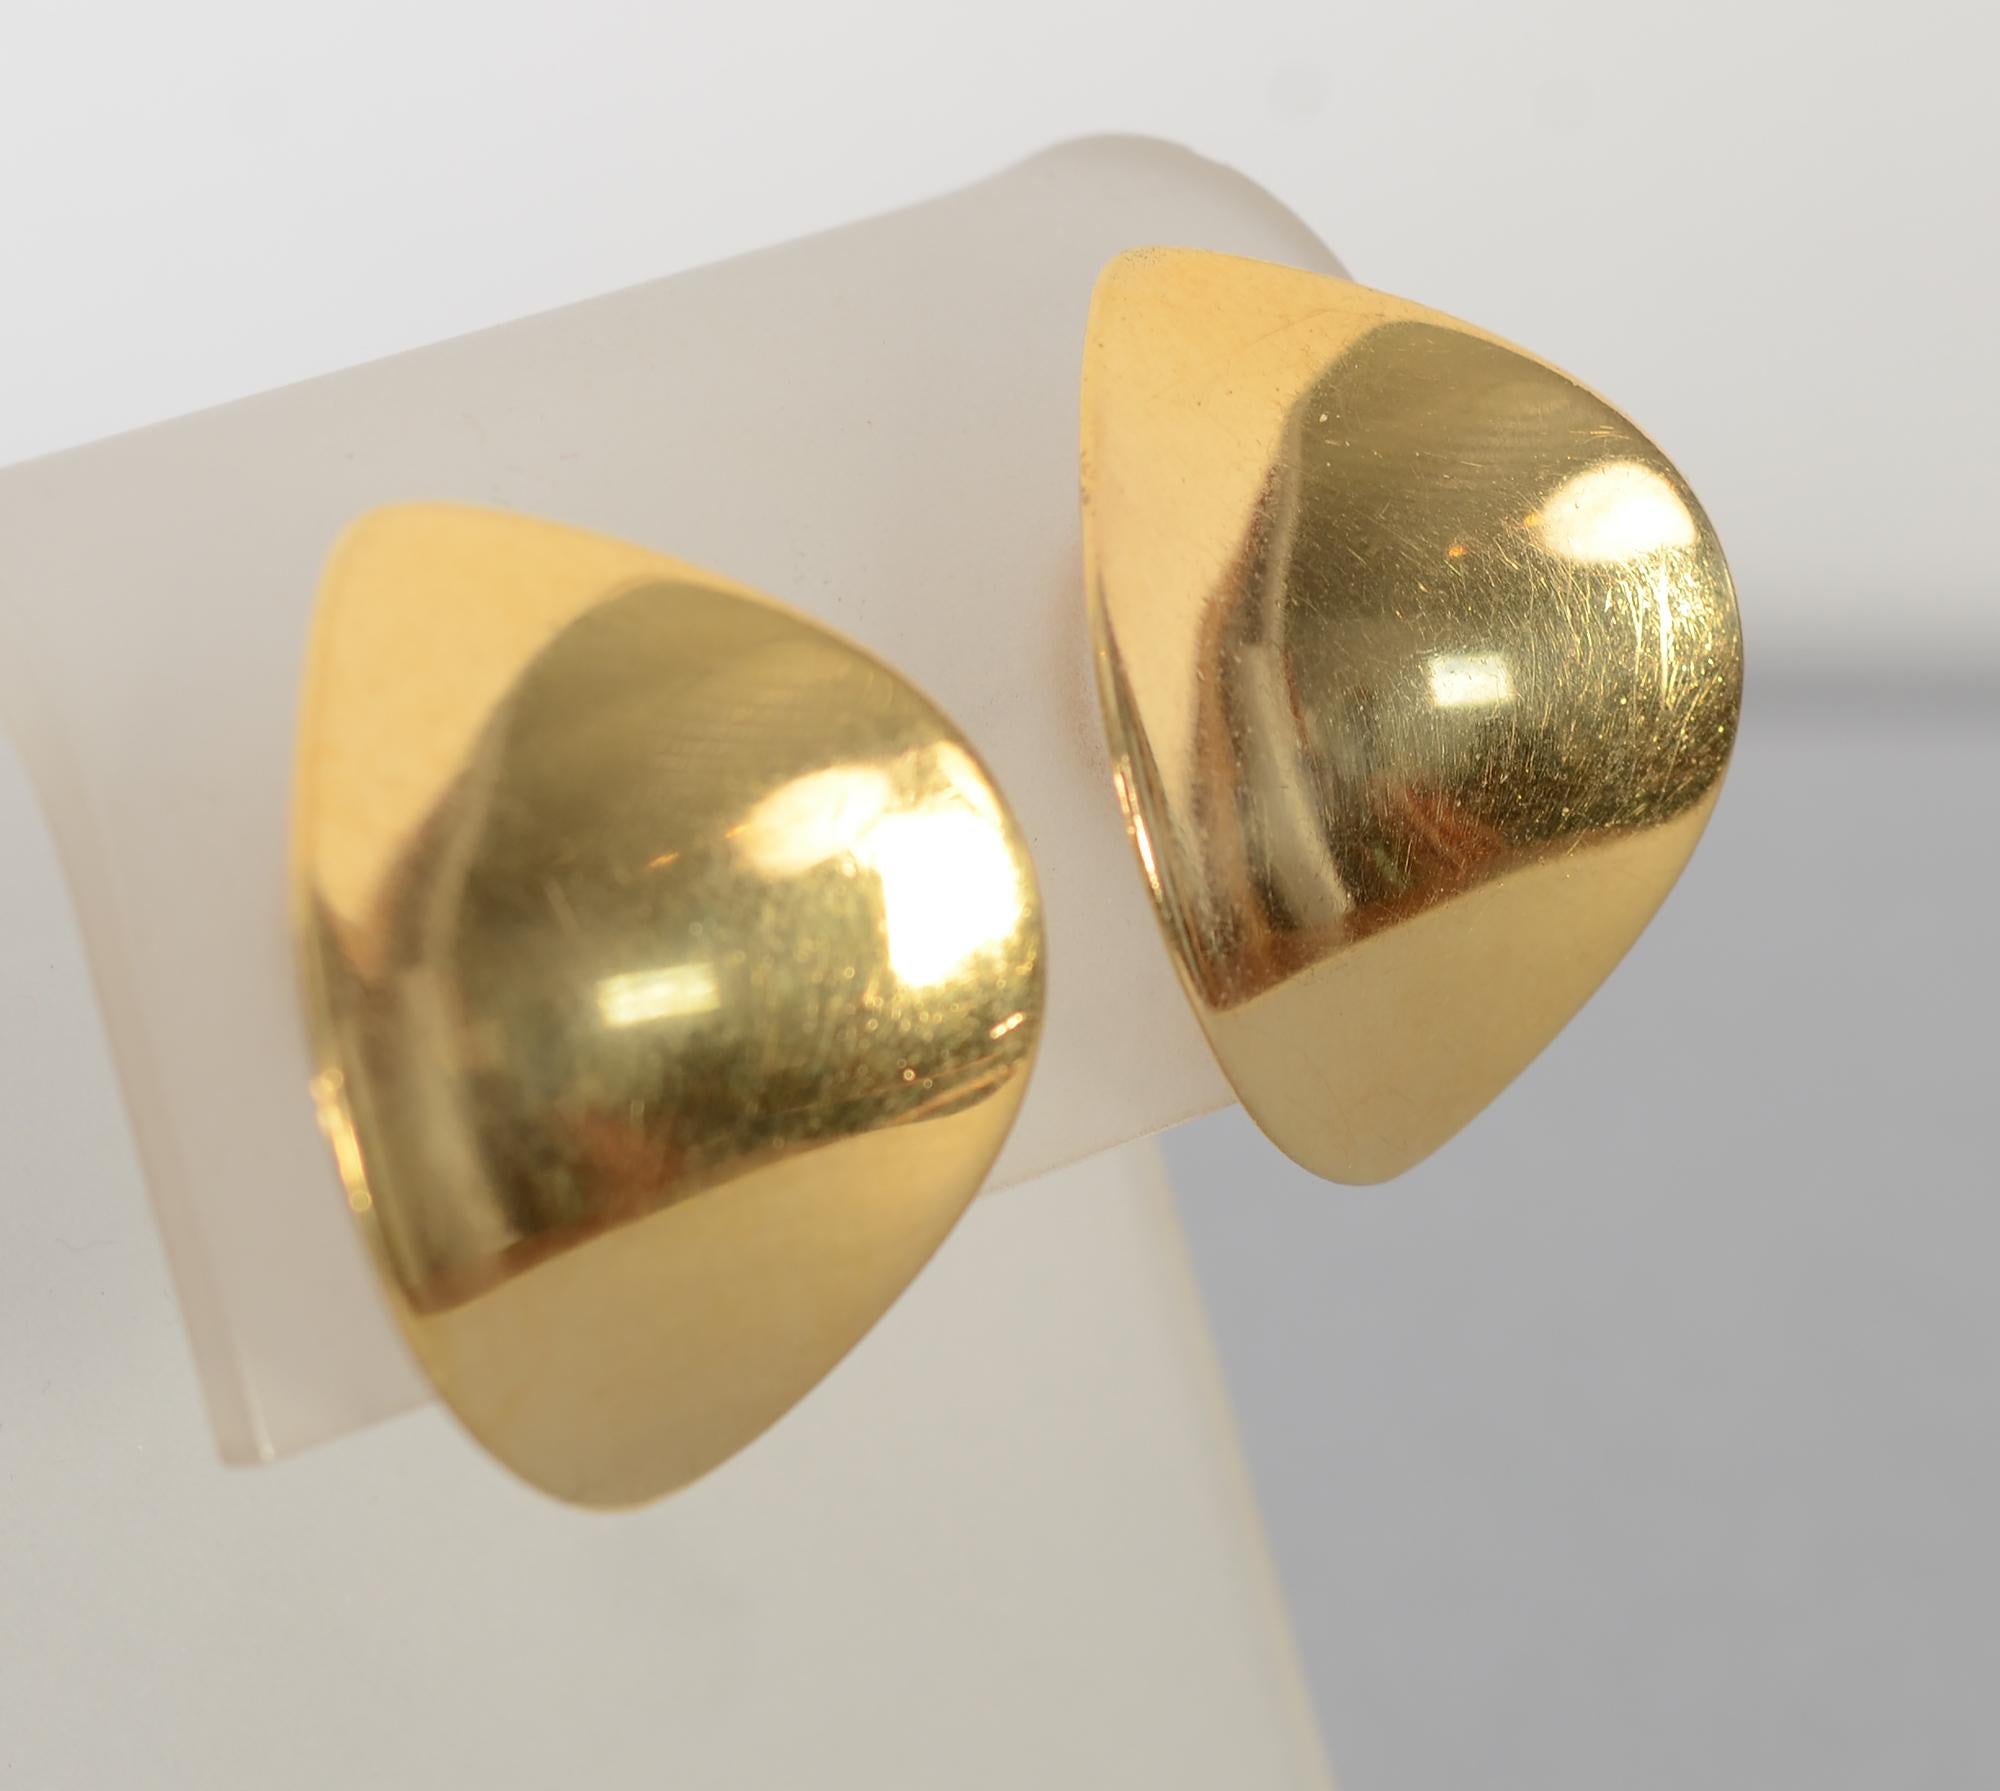 Georg Jensen 18 karat gold Modernist earrings in an undulating shape. The earrings were designed by Nana Ditzel. 
They measure 1 1/4